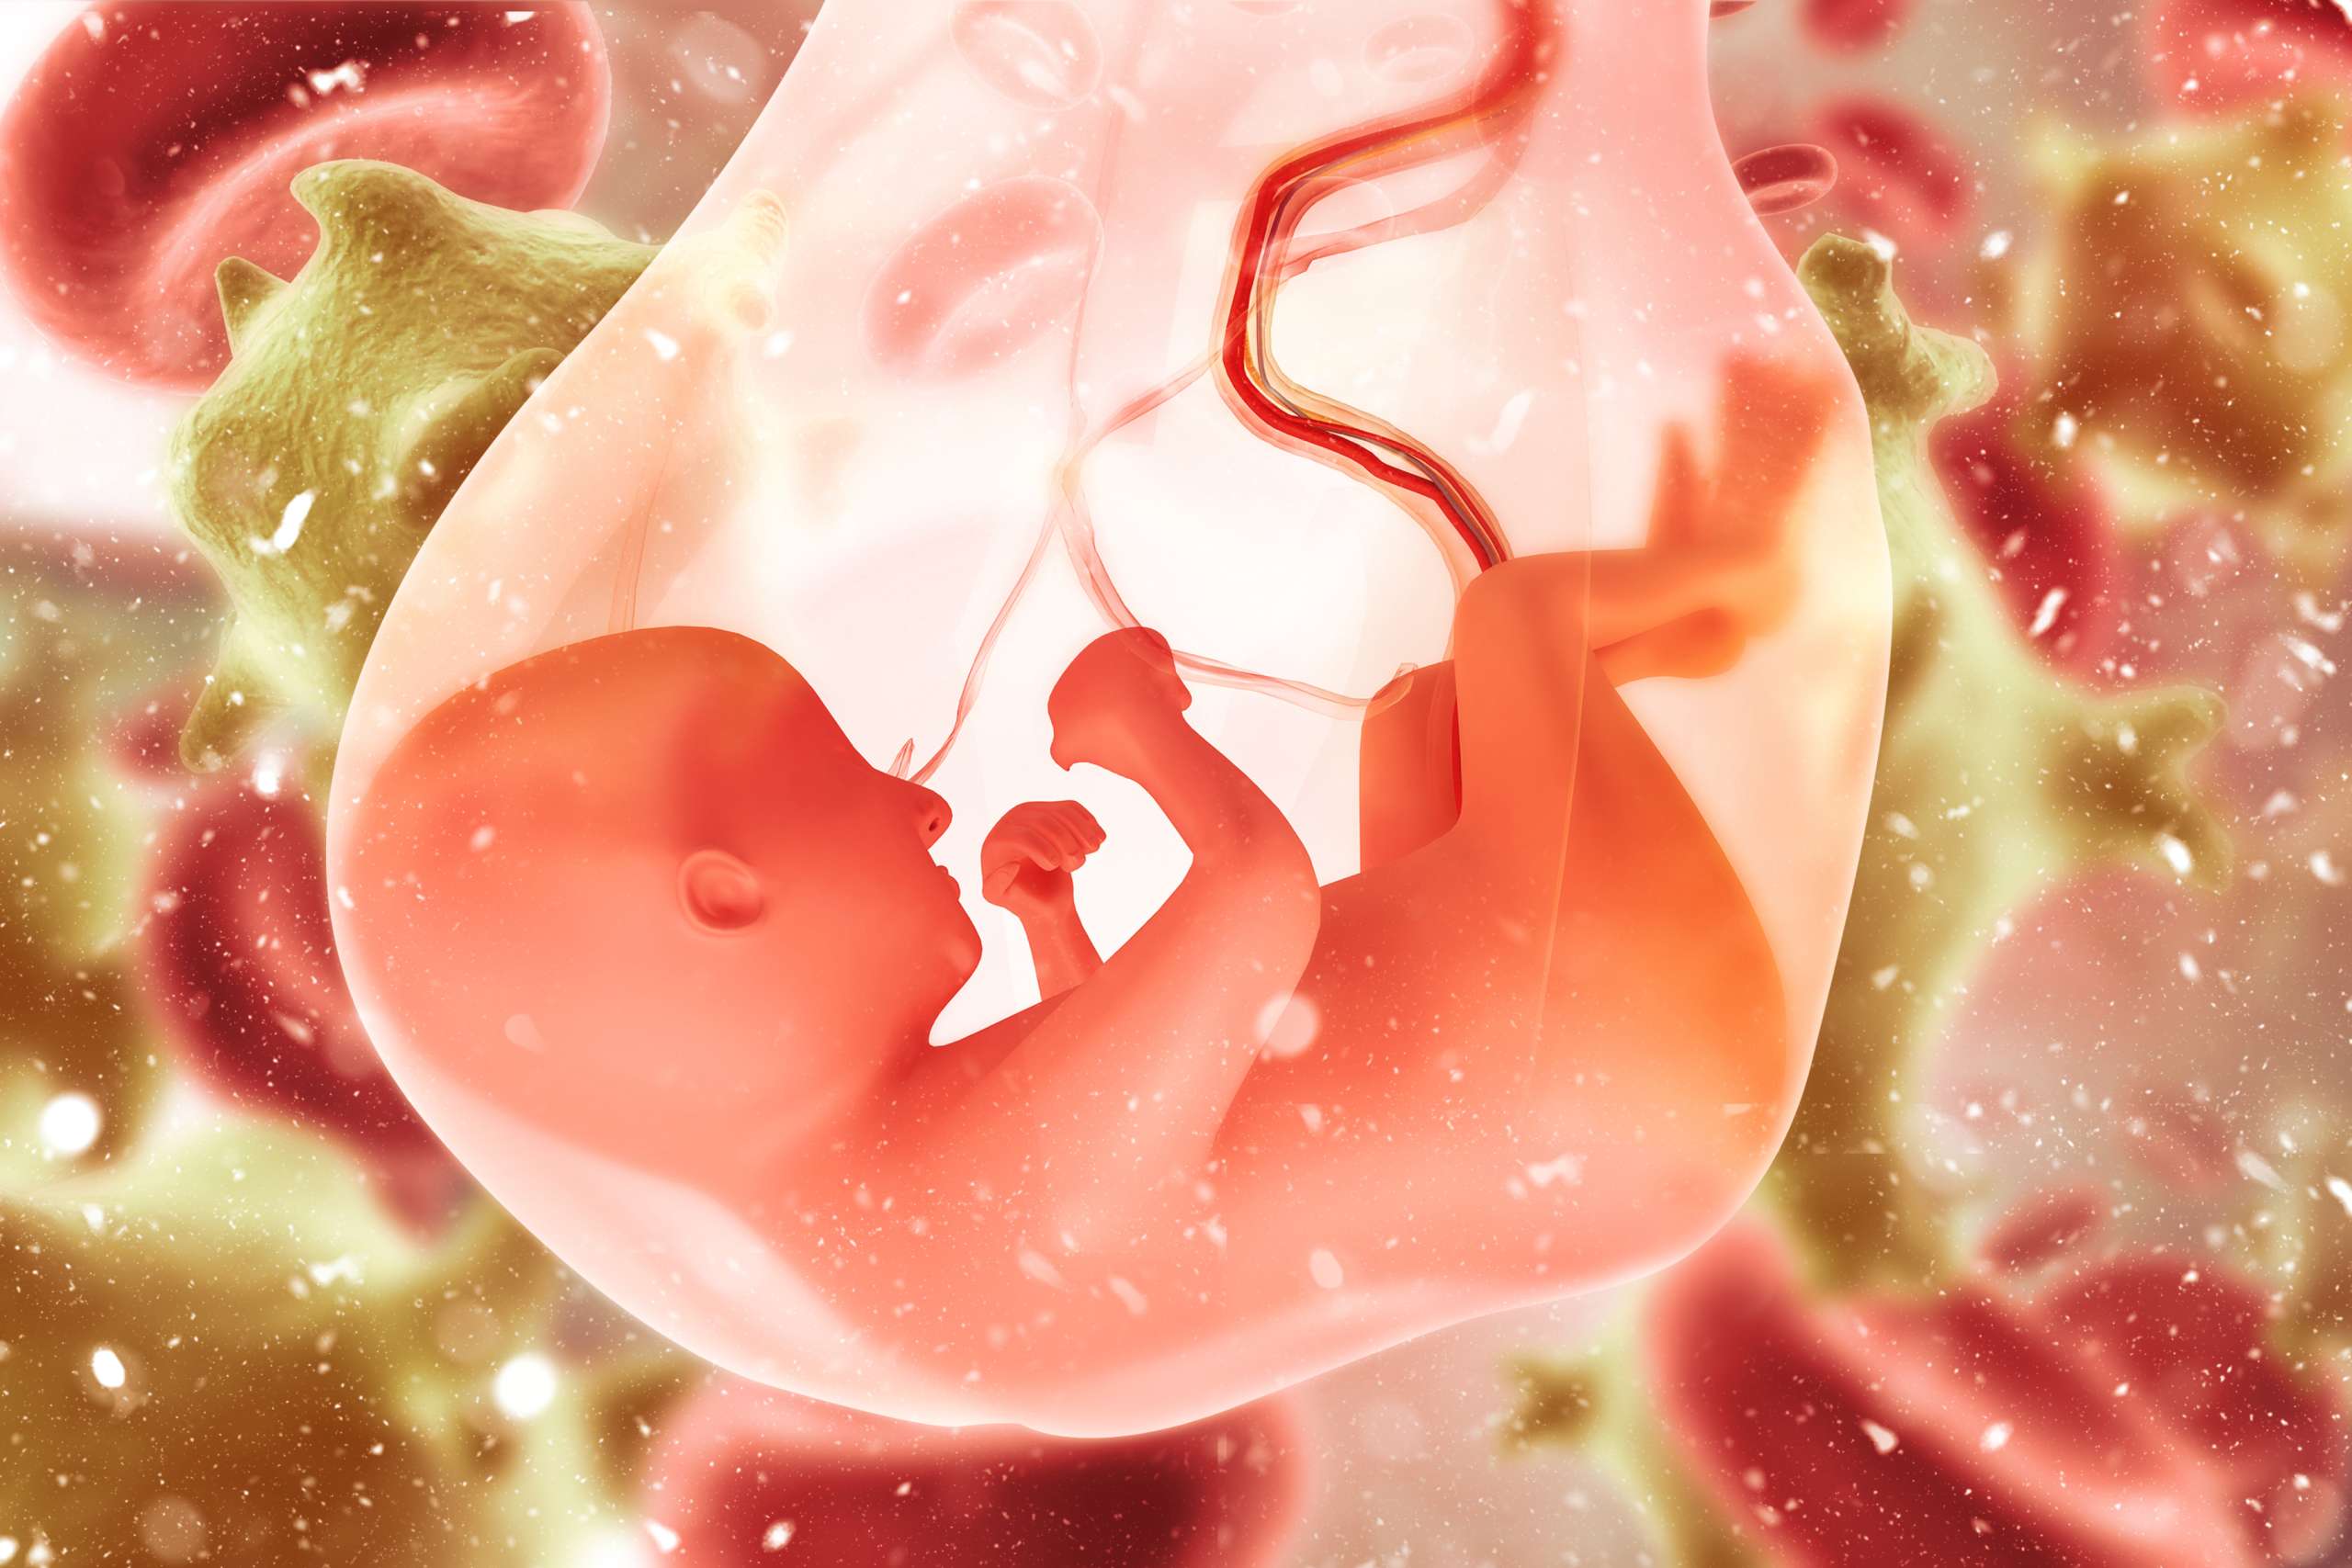 amniotic sac- Maternal Drug Use